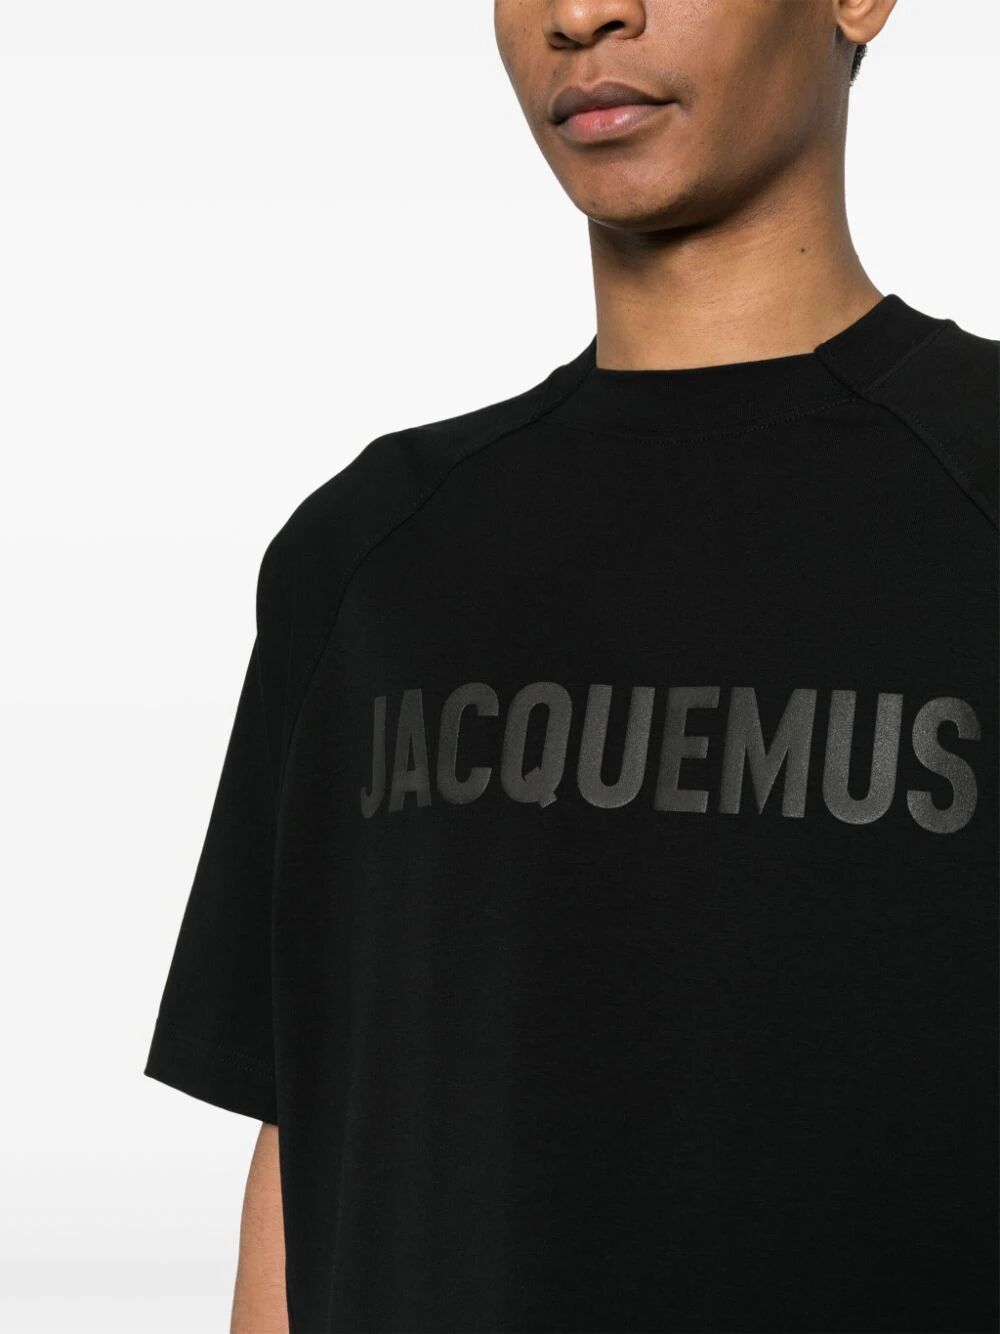 Shop Jacquemus Typo T In Black